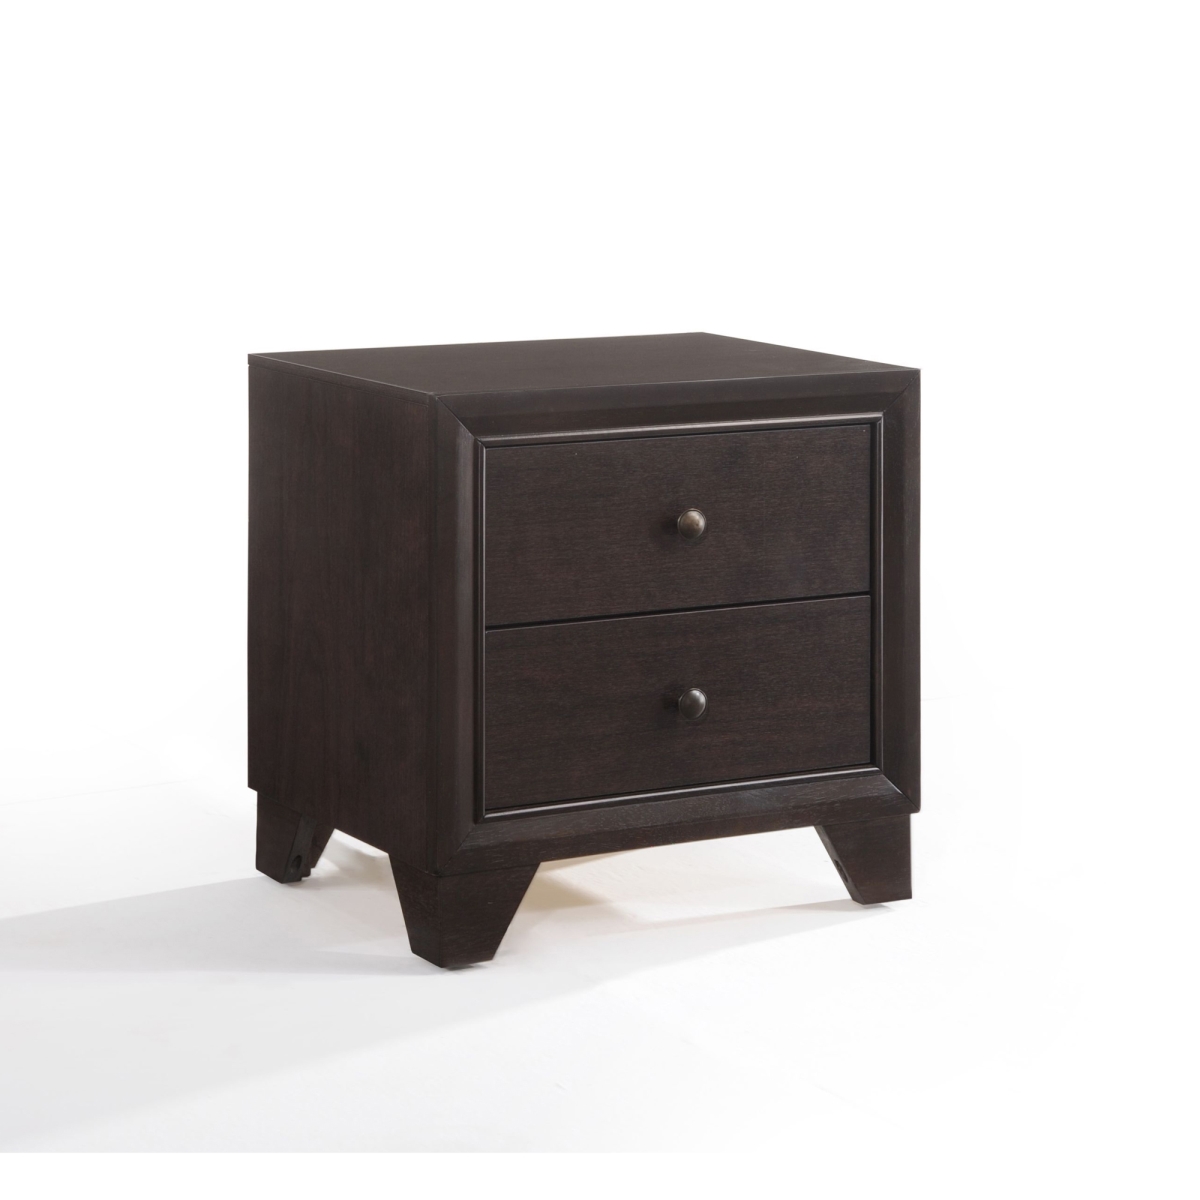 Urban Designs 4737591 2-drawer Wooden Nightstand, Espresso Brown - 22 X 16 X 22 In.